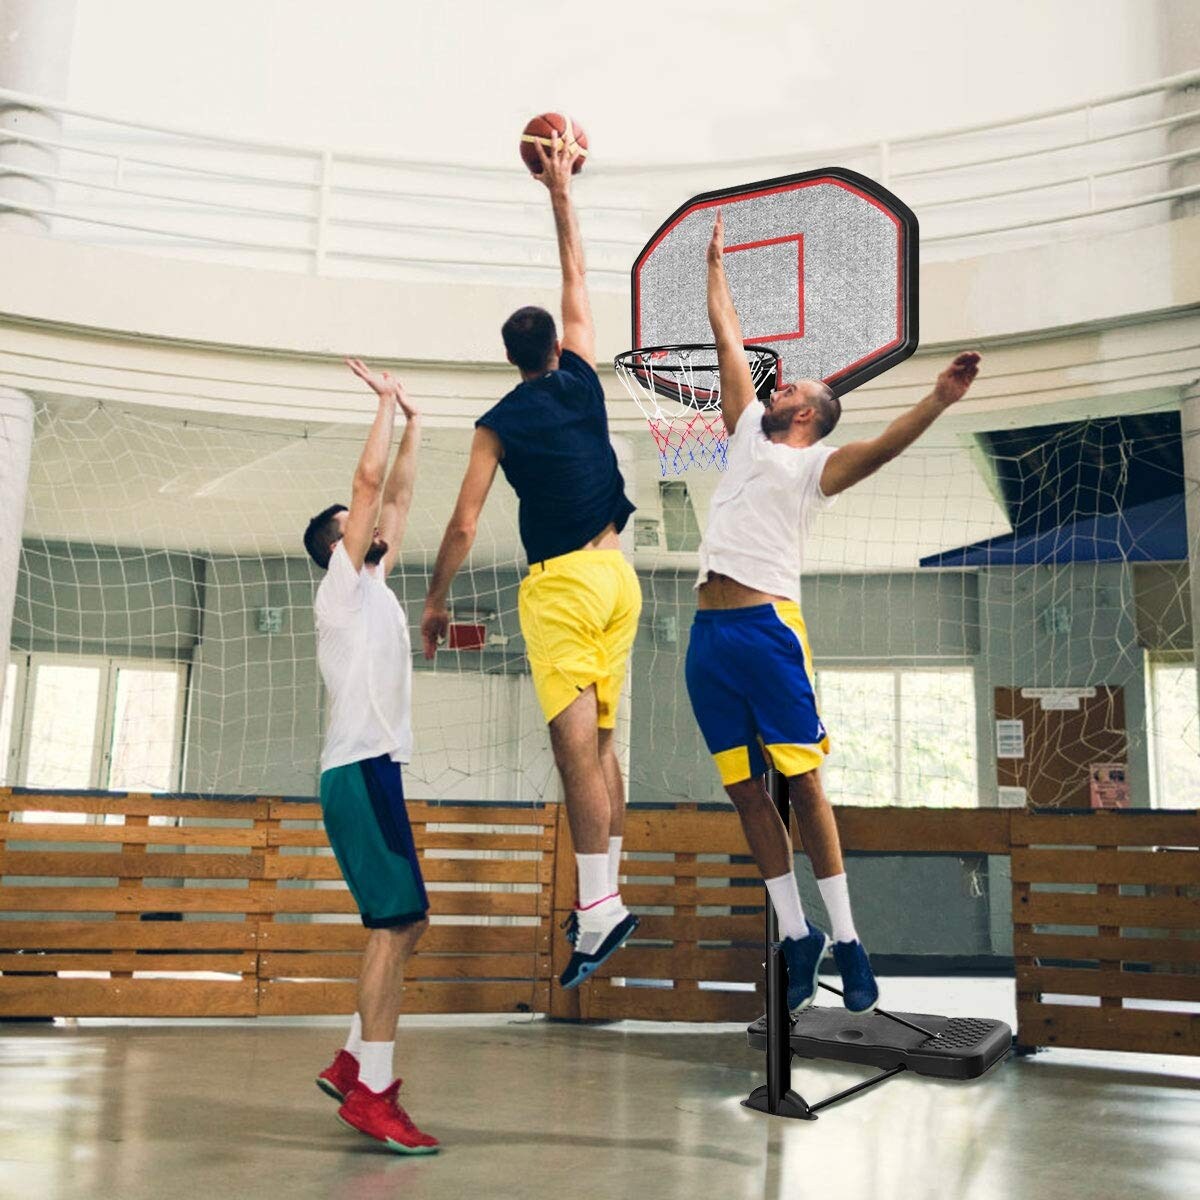 43 Inch Indoor Outdoor Height Adjustable Basketball Hoop